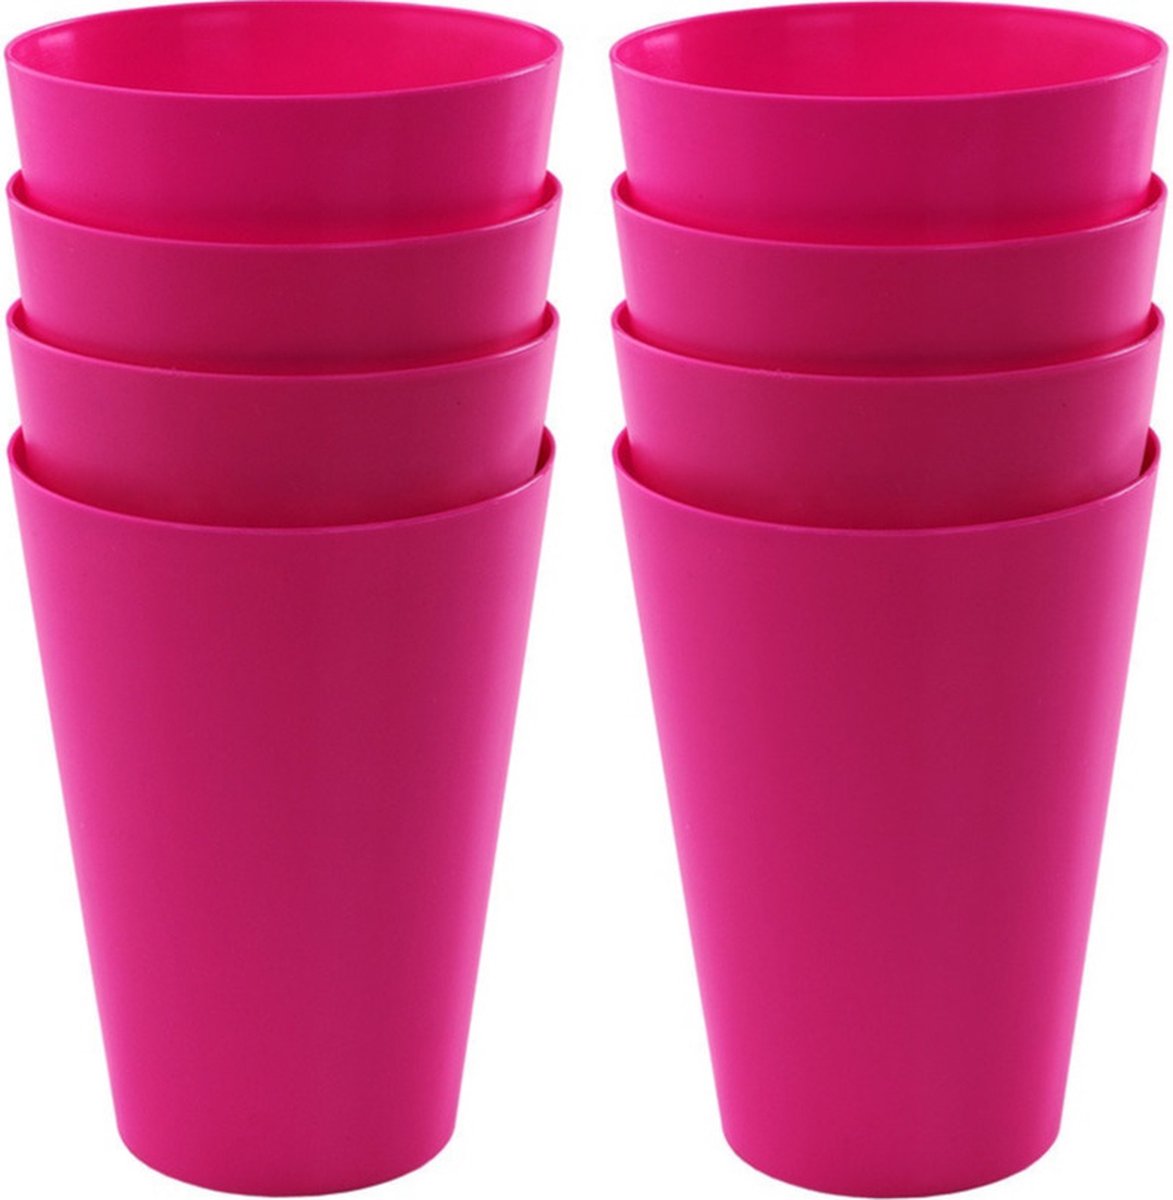 16x drinkbekers van kunststof 430 ml in het roze - Limonade bekers - Campingservies/picknickservies